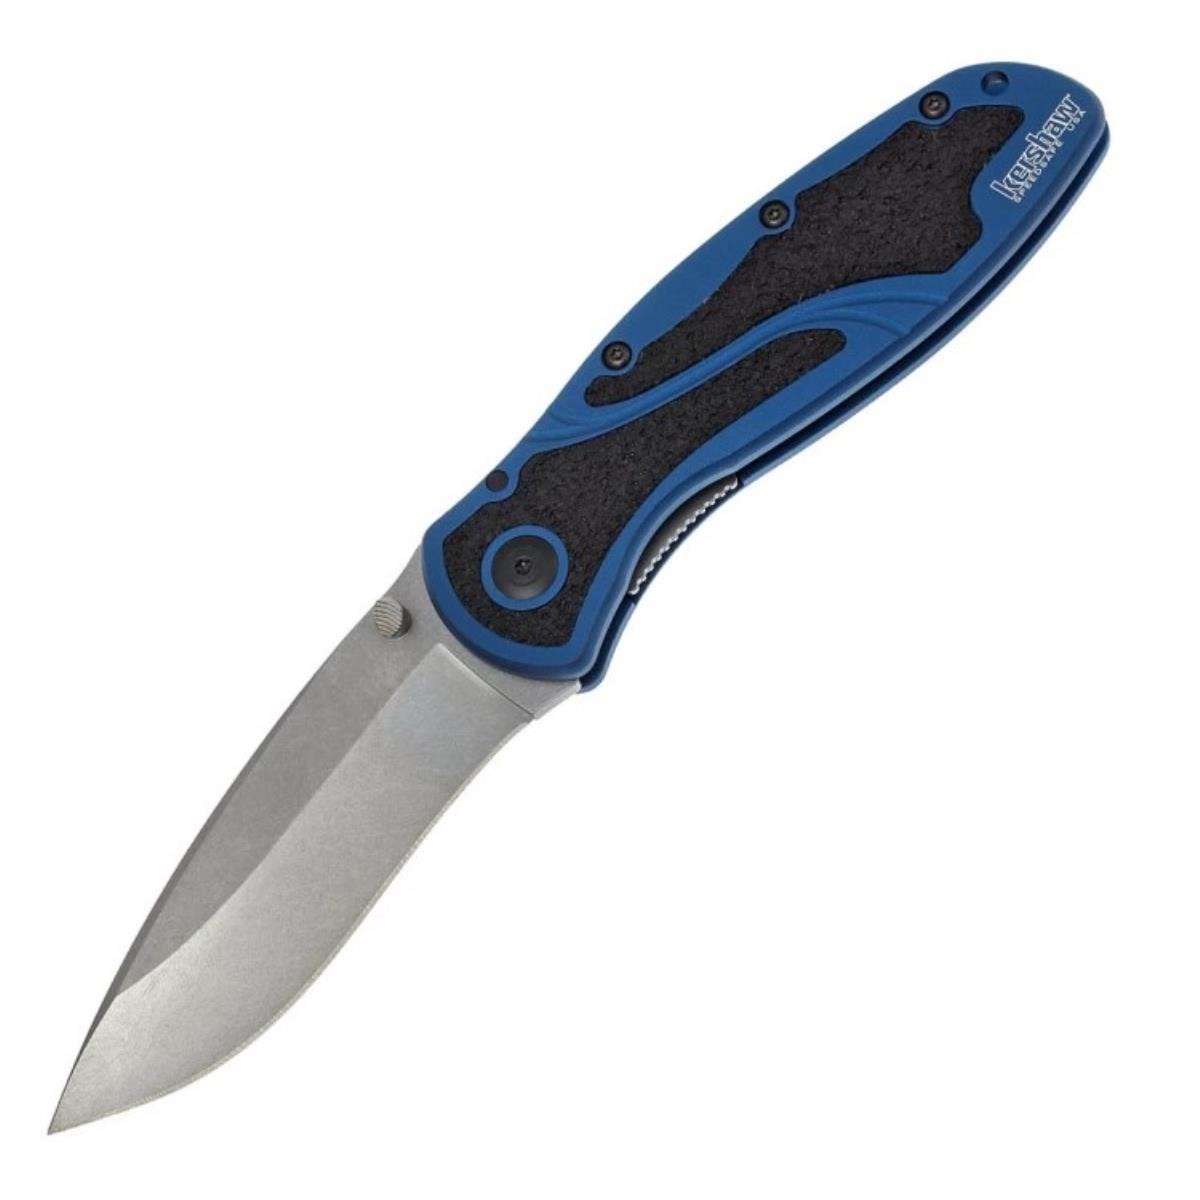 Нож склад., алюм. рук-ть синяя, клинок Sandvik 14C28N - K1670NBSW Blur KERSHAW нож для шашлыка 30 см длина лезвия 15 см армения